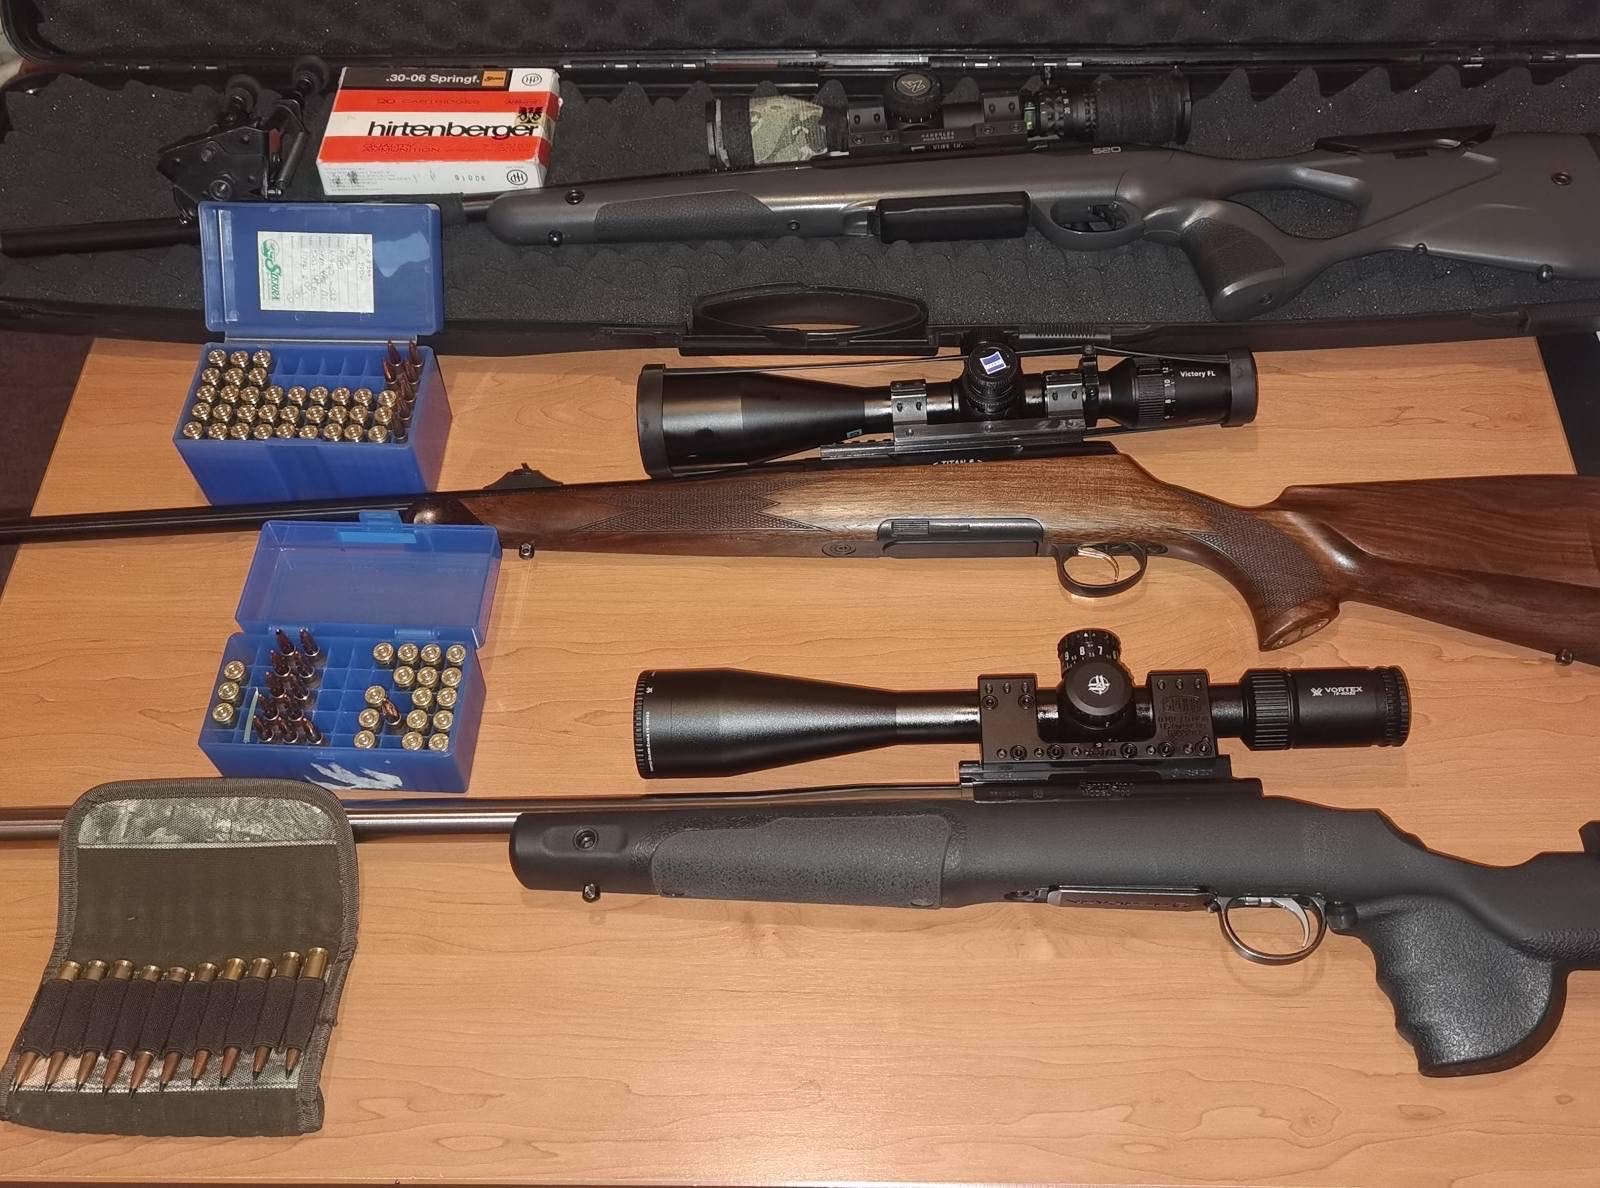 Uprava policije:  Pronađeni i oduzeti karabini i municija iz više automobila kod Šavnika